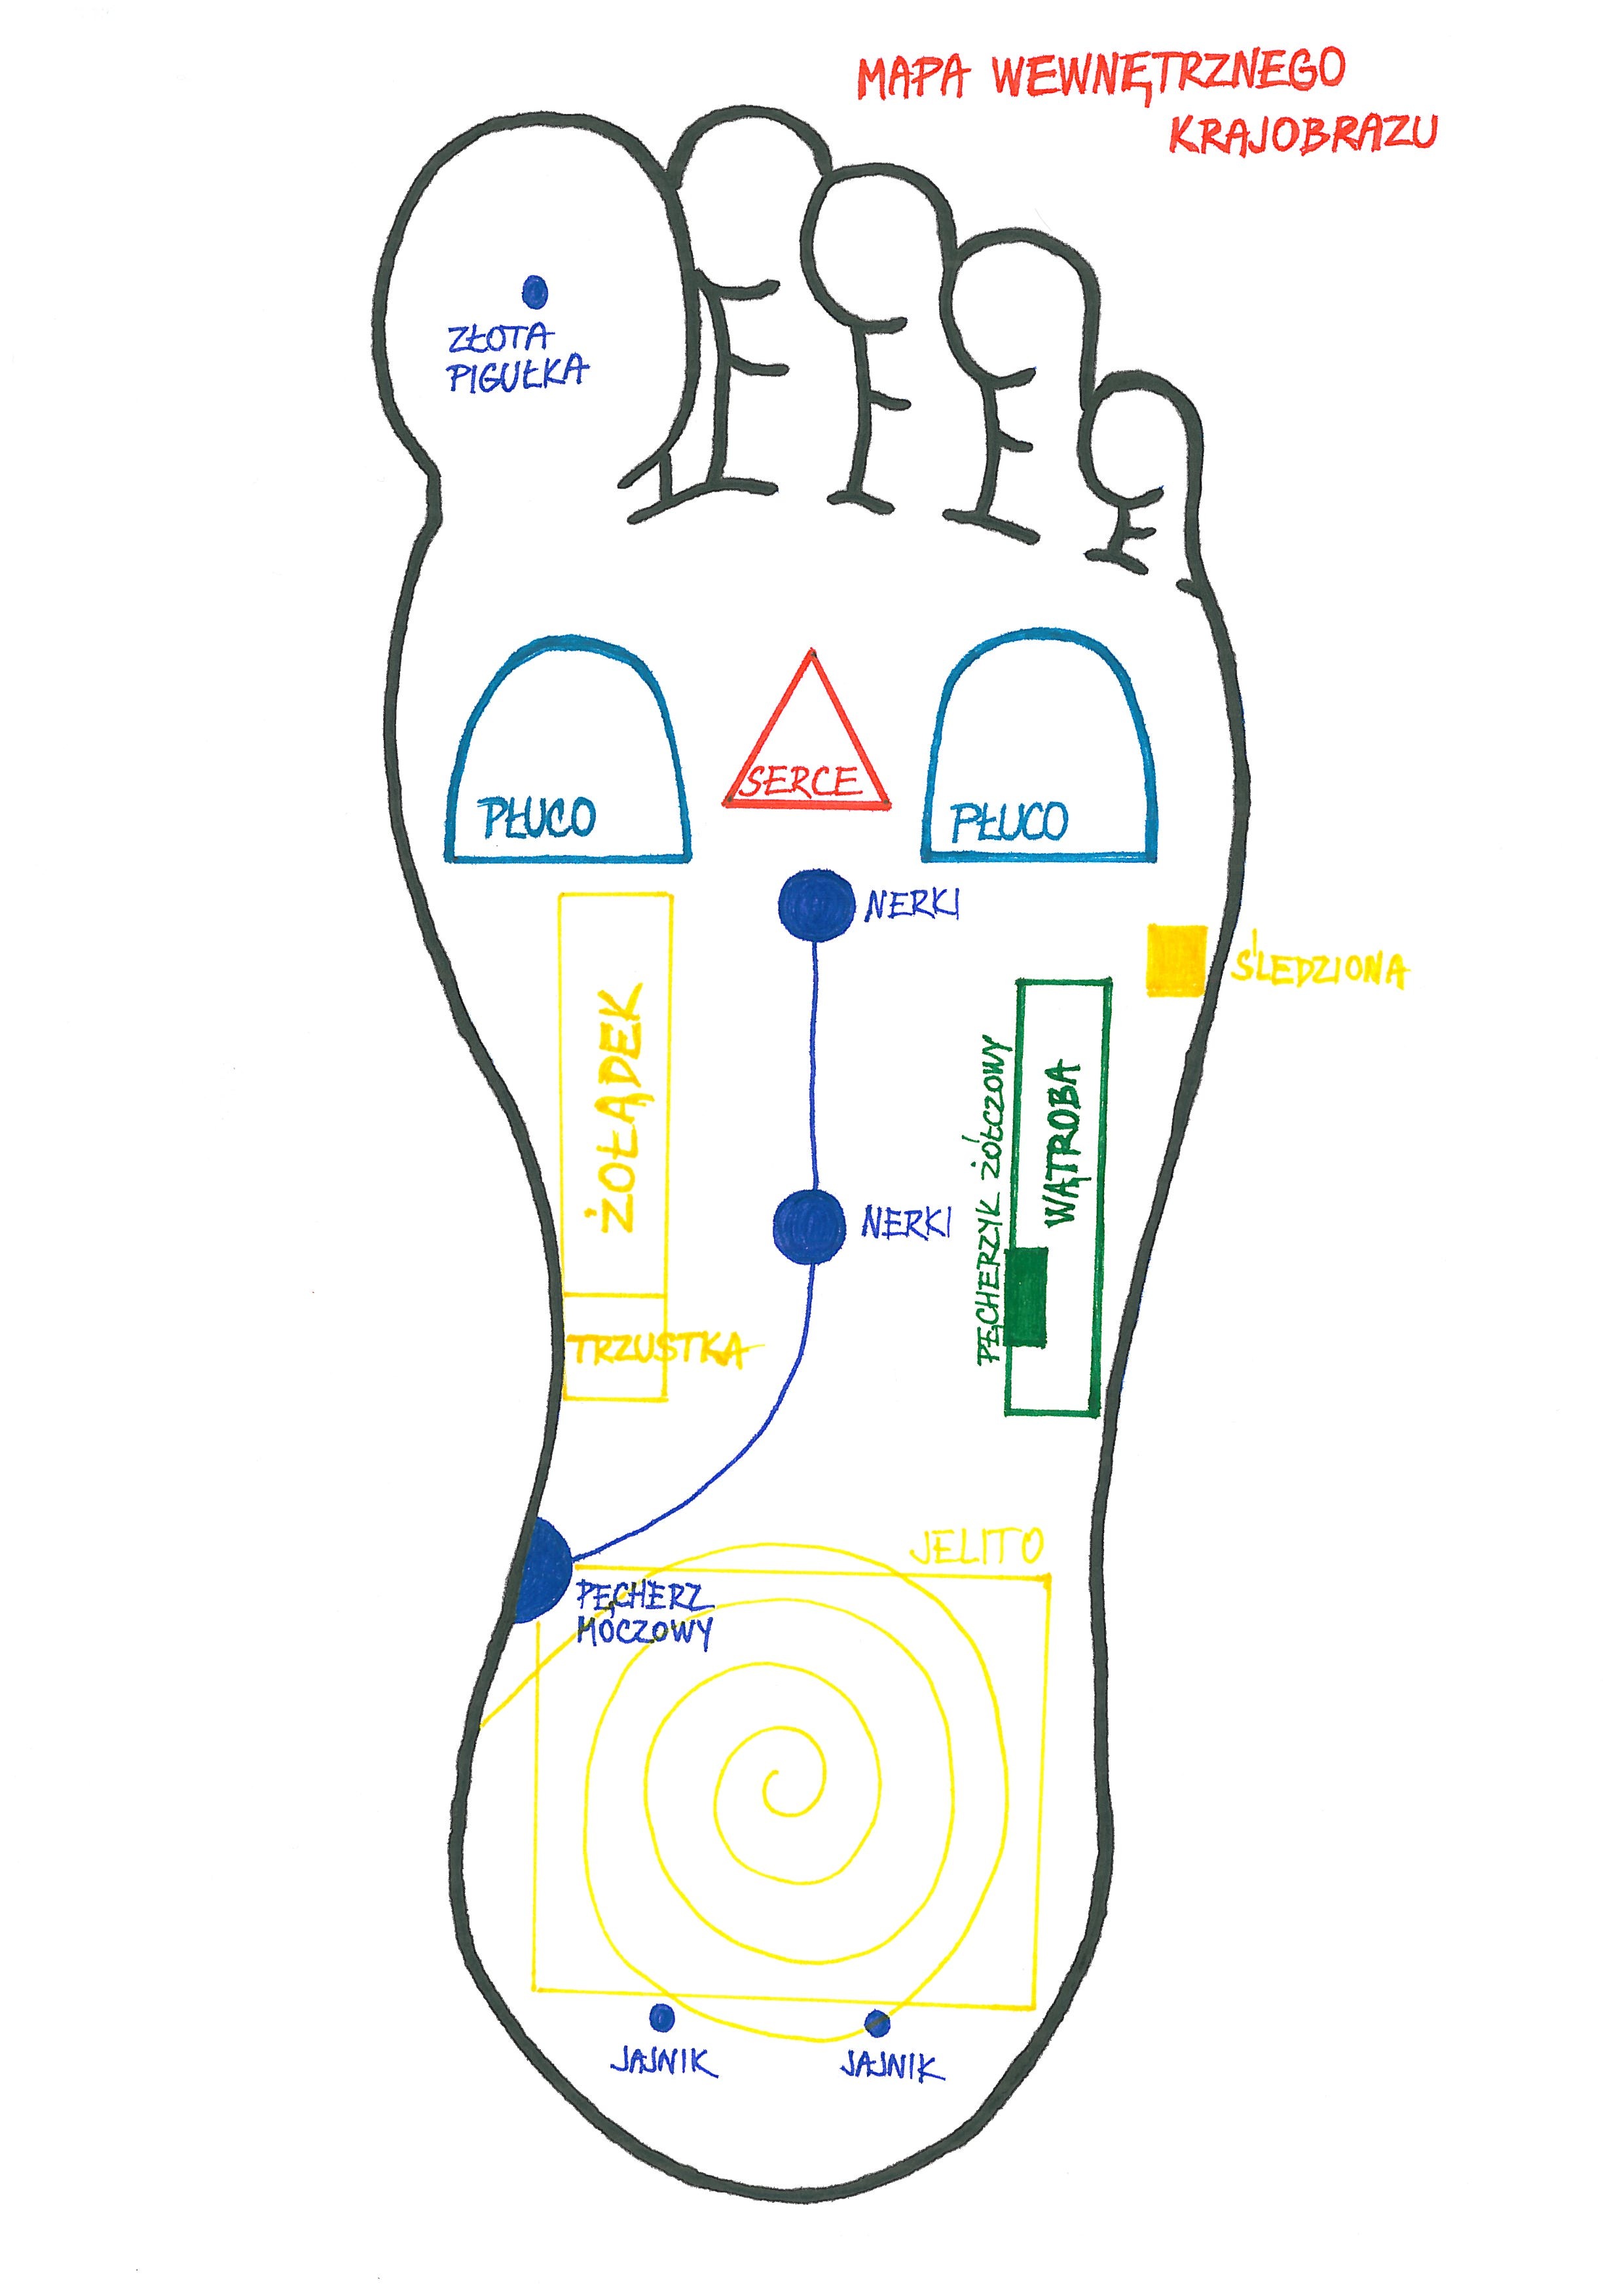 Kurs masażu stóp On Zon Su, Szkolenia refleksologii stóp - Problemy z jelitami, część 1 → Położenie stref refleksologicznych jelit na stopie i sposób masowania Mapa_Krajobrazu_Wewnetrznego.jpg